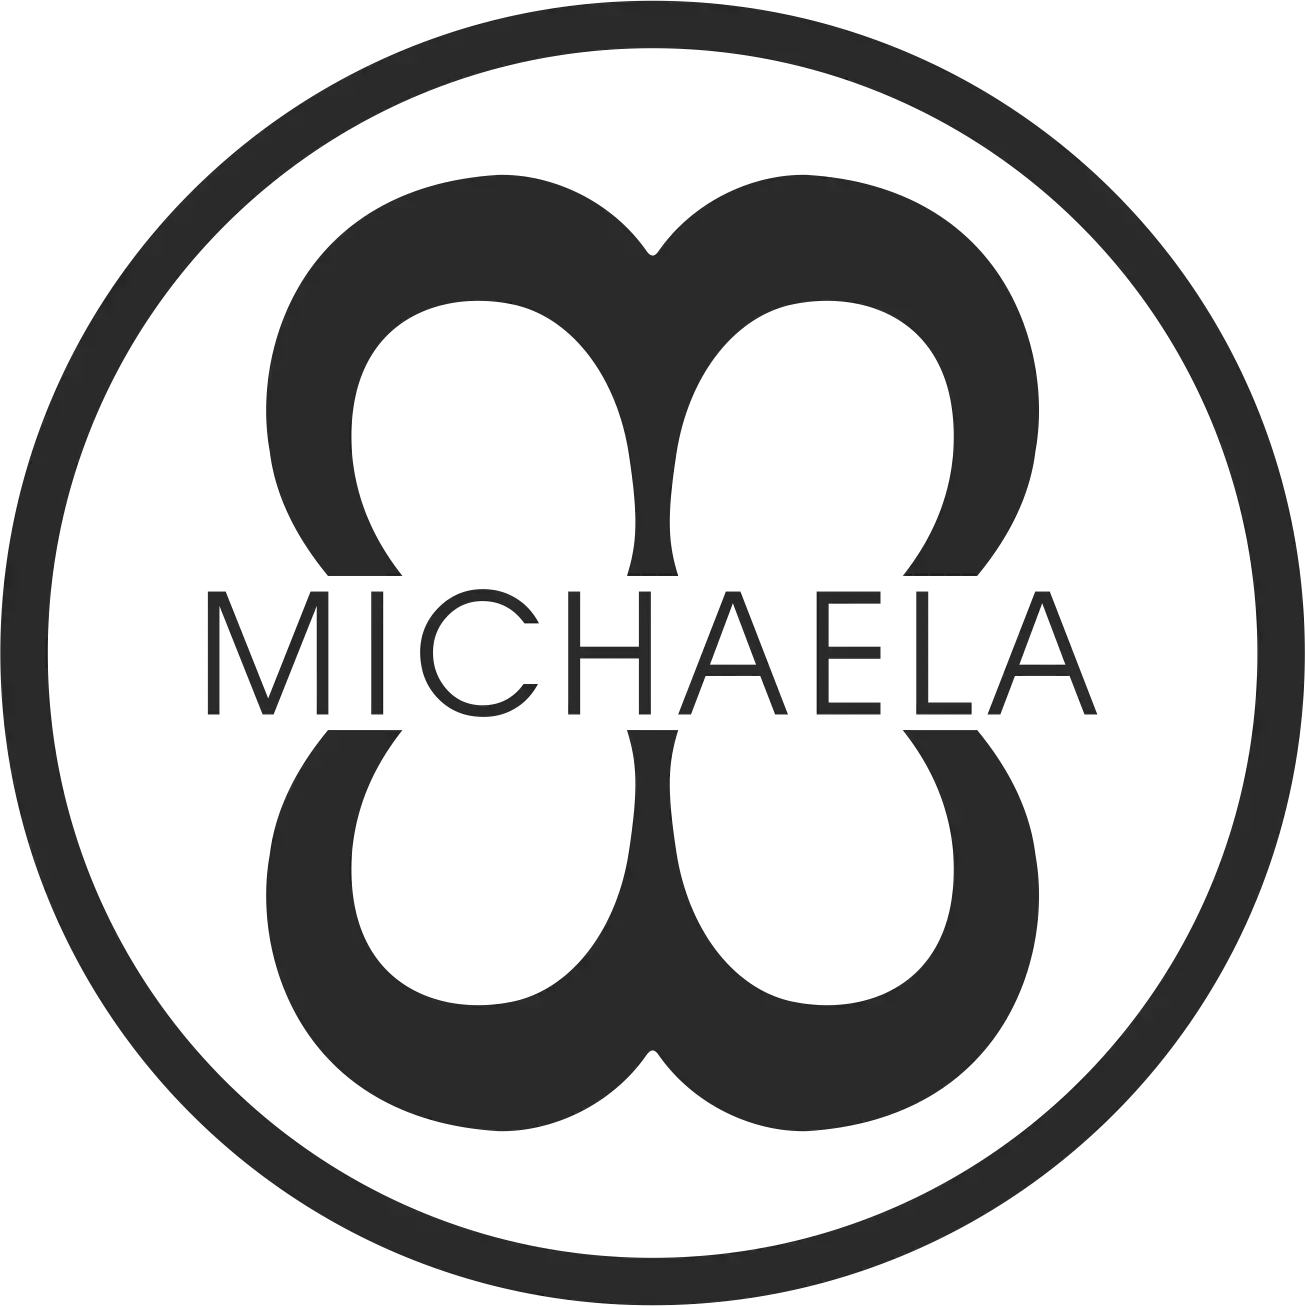 MICHAELA